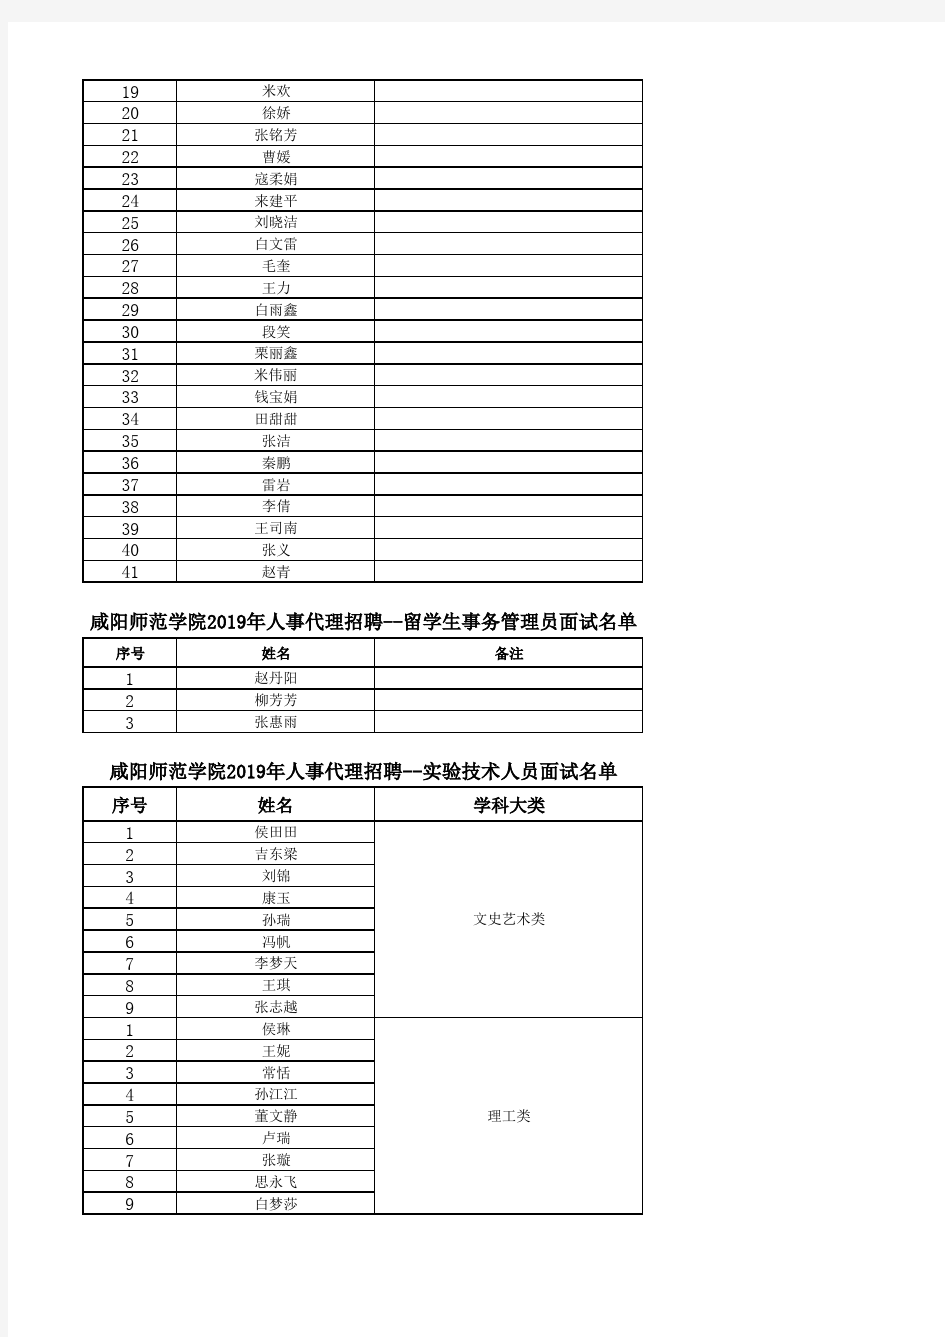 咸阳师范学院2019年人事代理招聘--高校教师面试名单